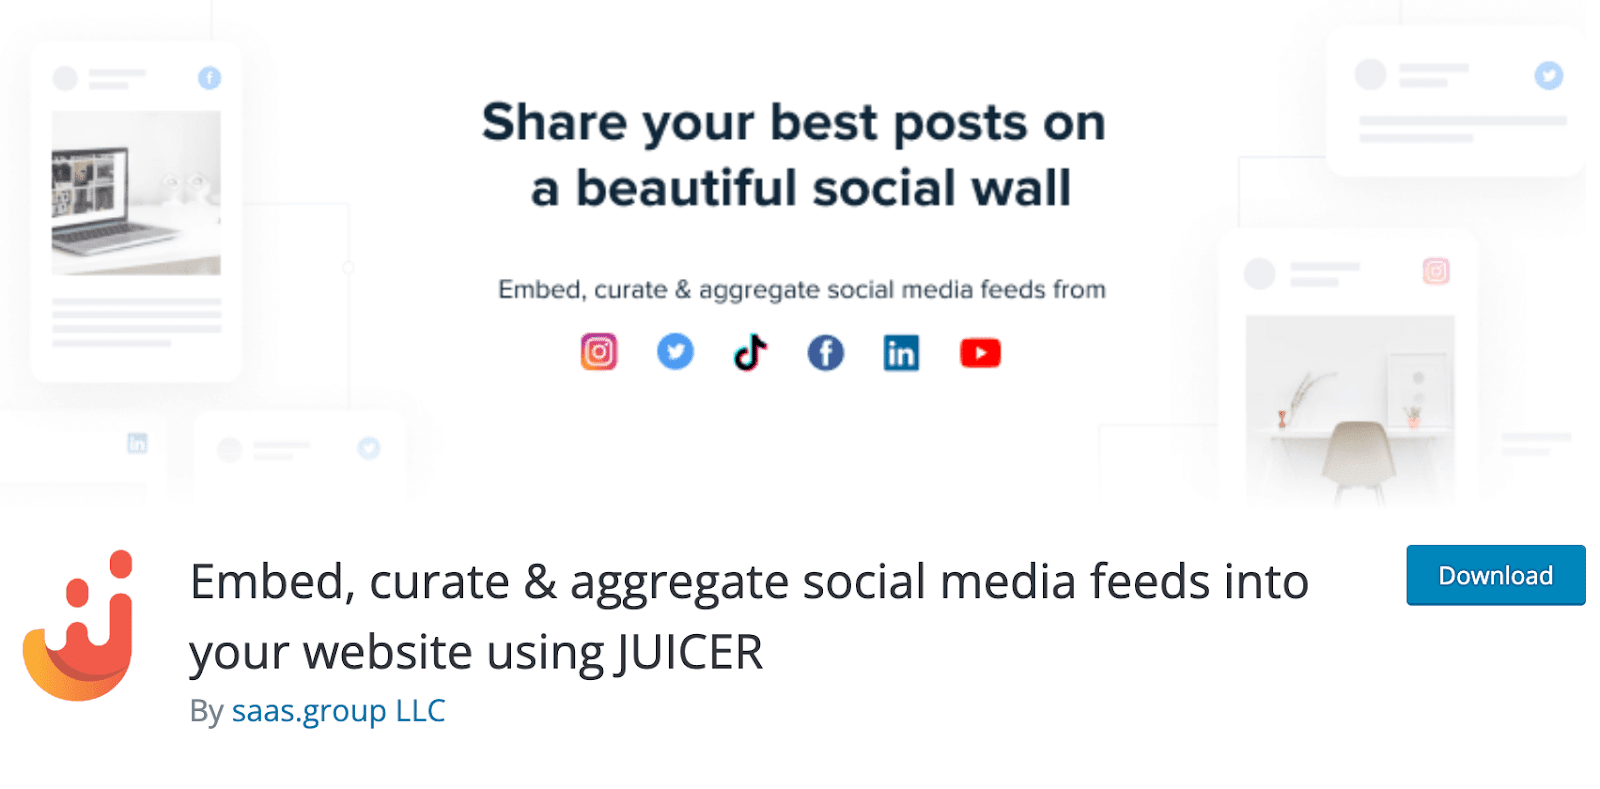 Juicer.io social media wall plugin